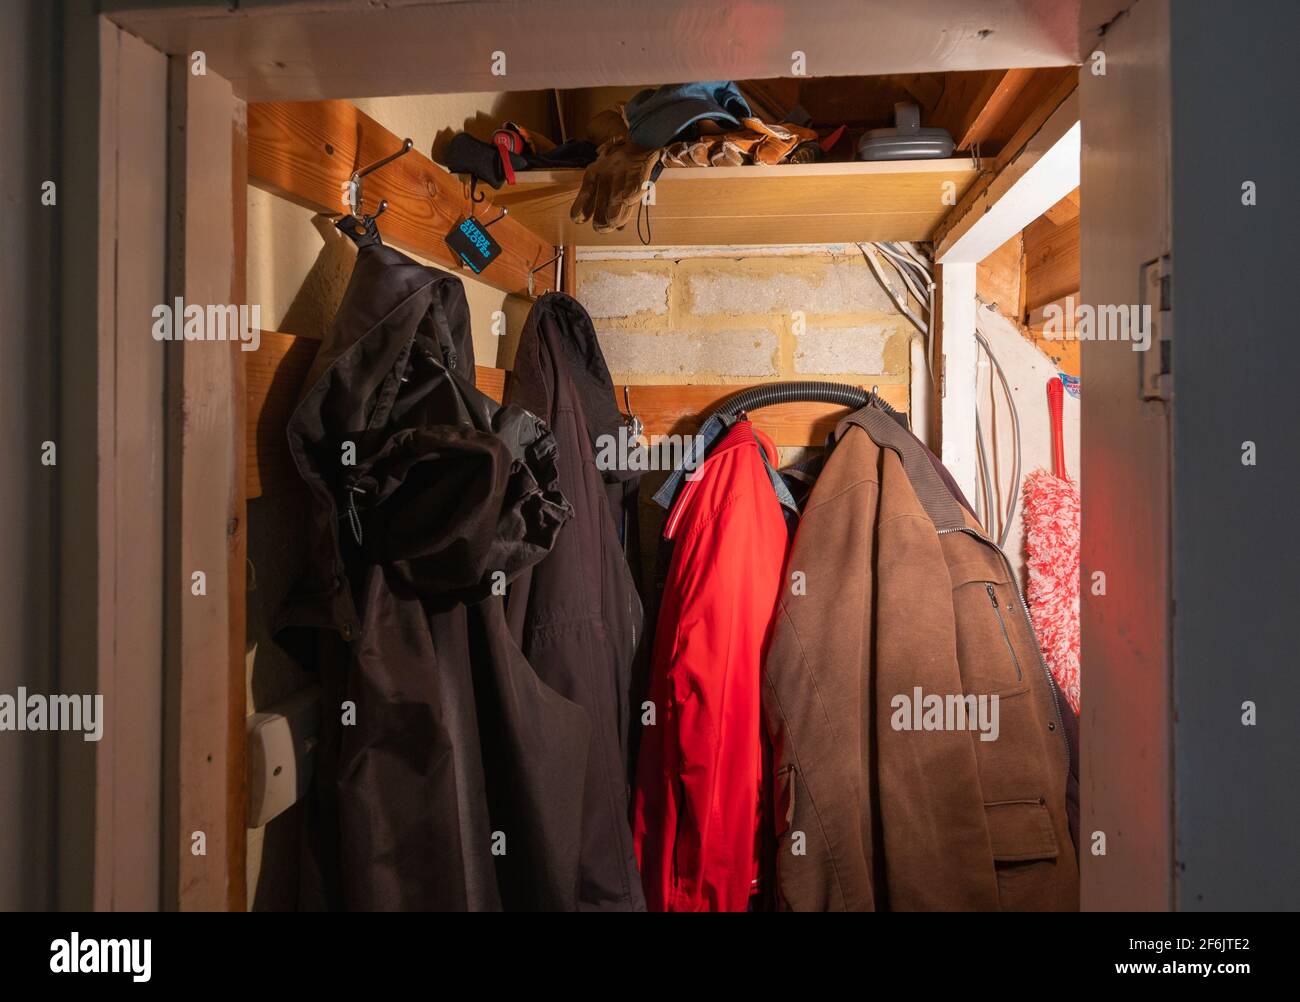 Mäntel, die in einem kleinen Schrank oder Schrank unter der Treppe aufhängen, wo Sie einen Mantel aufhängen und andere Gegenstände aufbewahren können, in einem britischen Haus in England, Großbritannien. Stockfoto